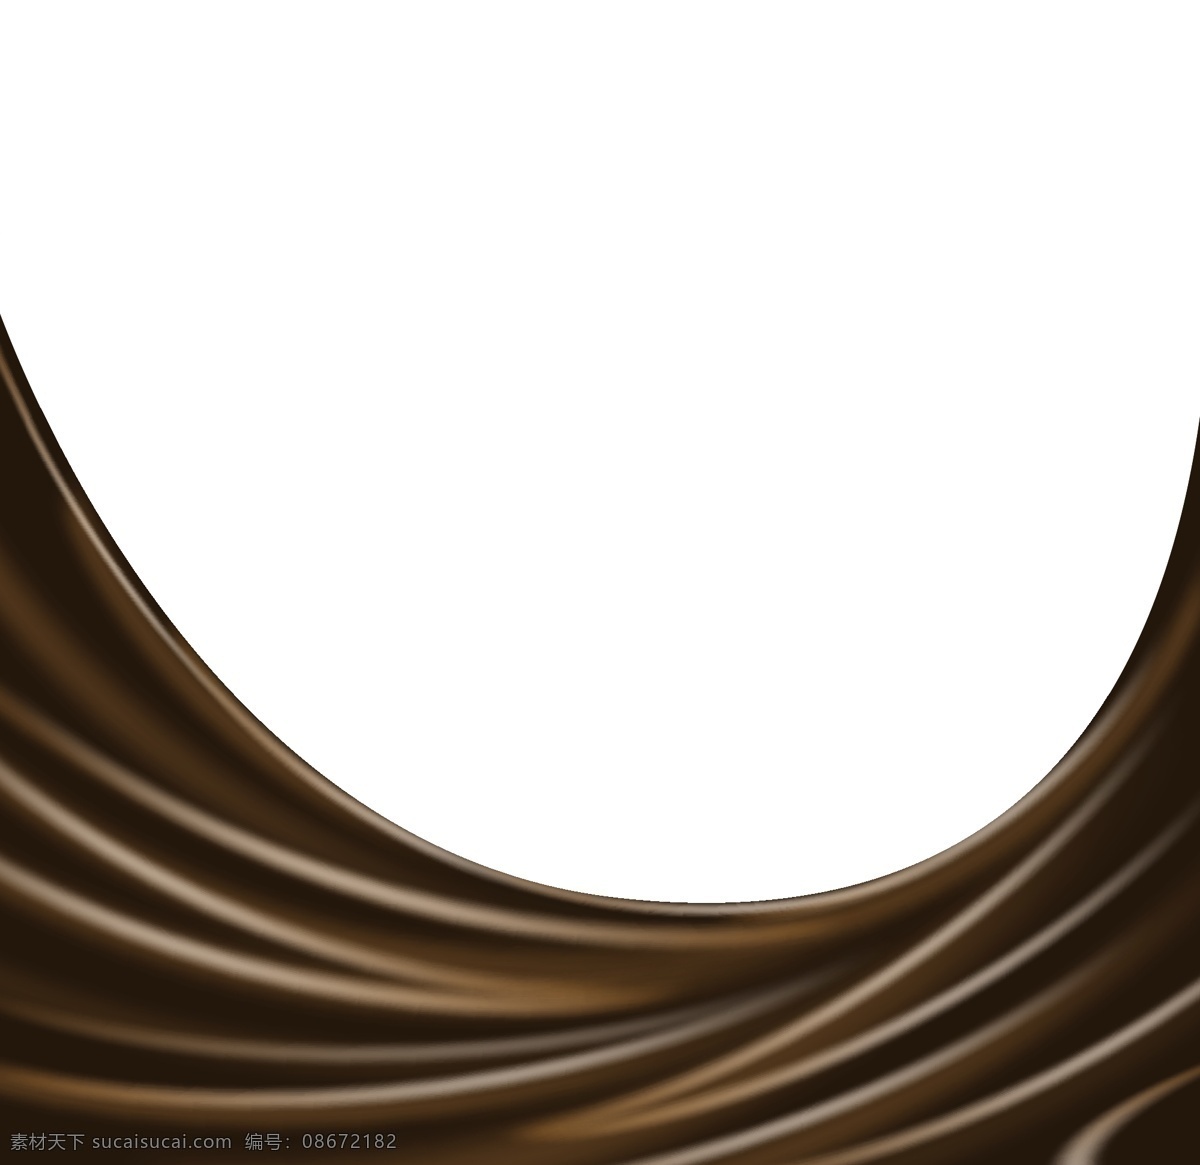 巧克力 背景图片 丝滑质感 巧克力背景 丝滑背景 顺滑巧克力 咖啡 巧克力豆